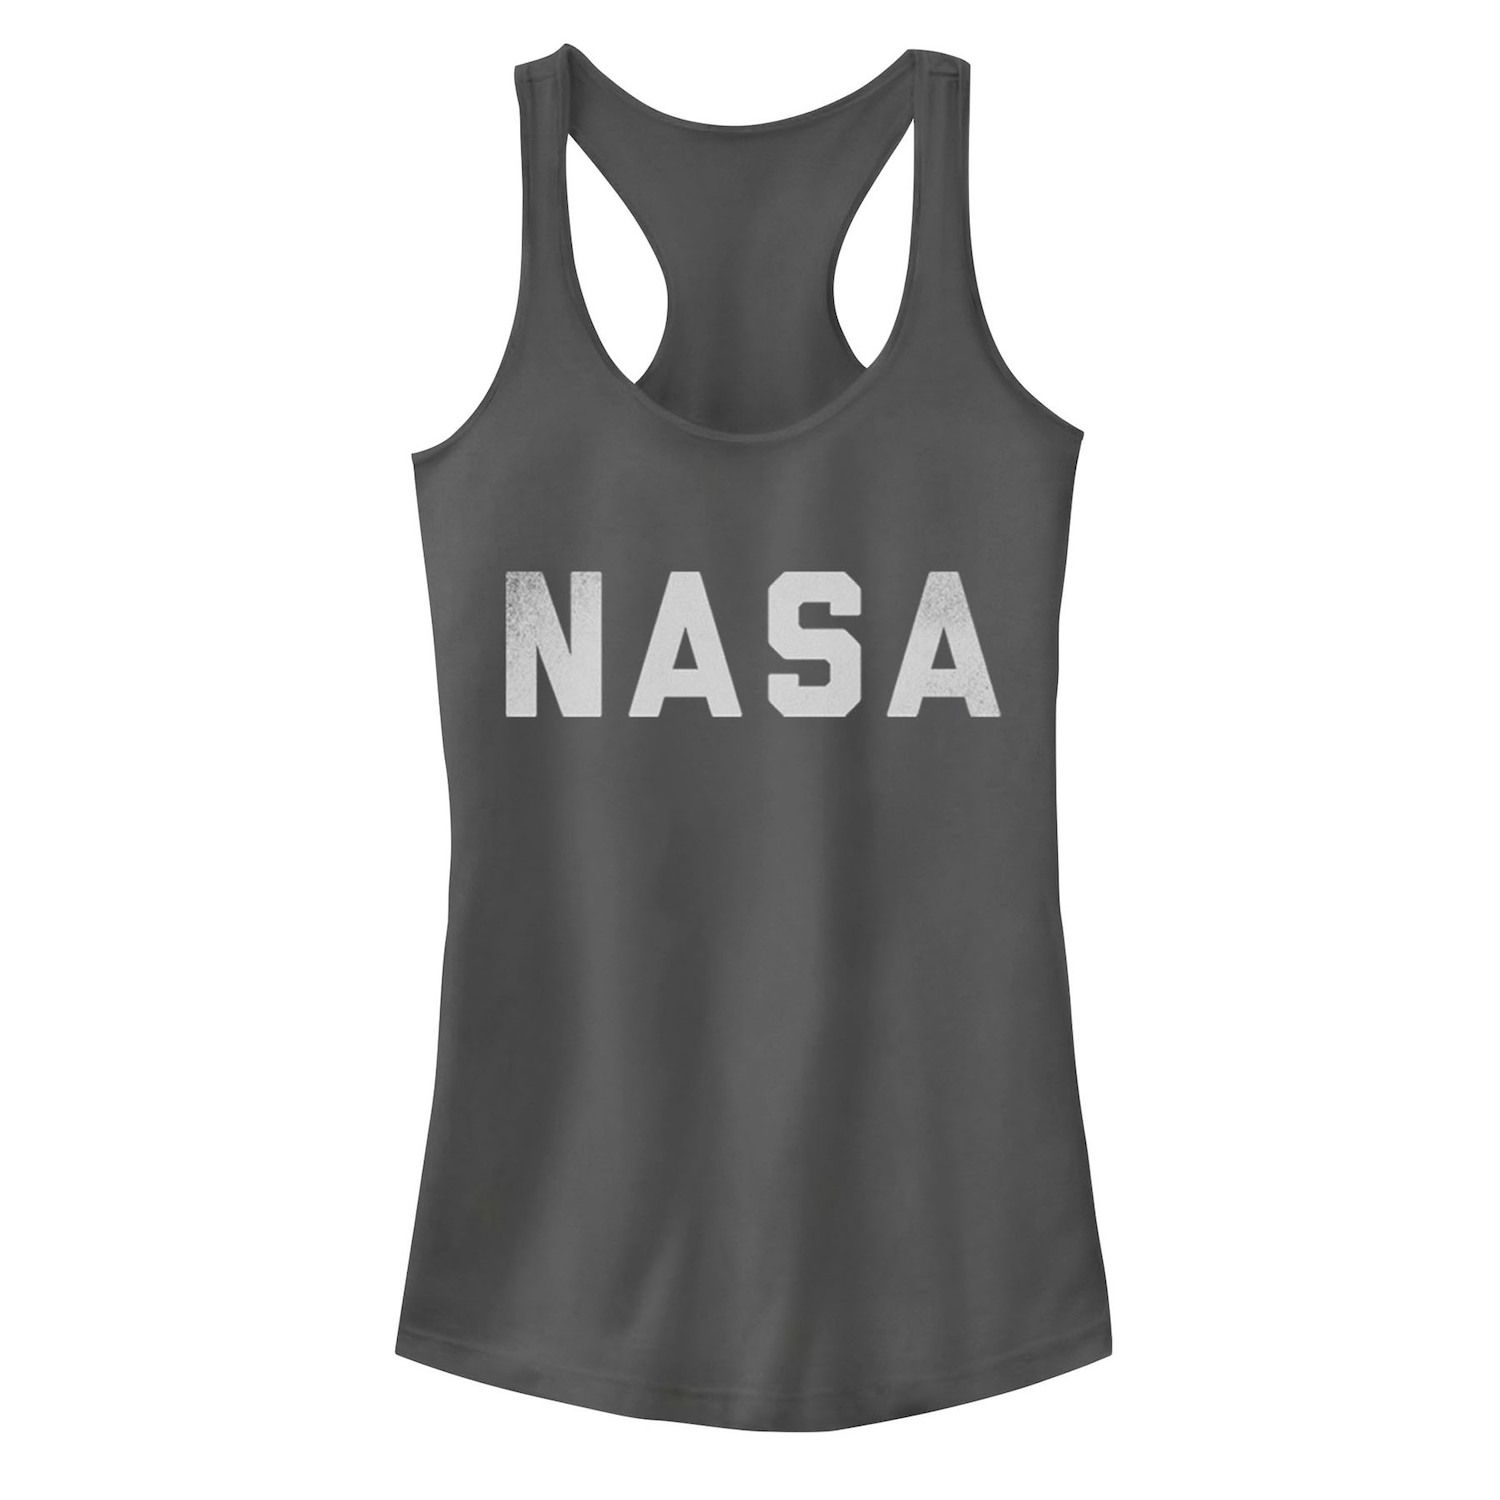 Майка с белым текстовым логотипом NASA для юниоров Licensed Character